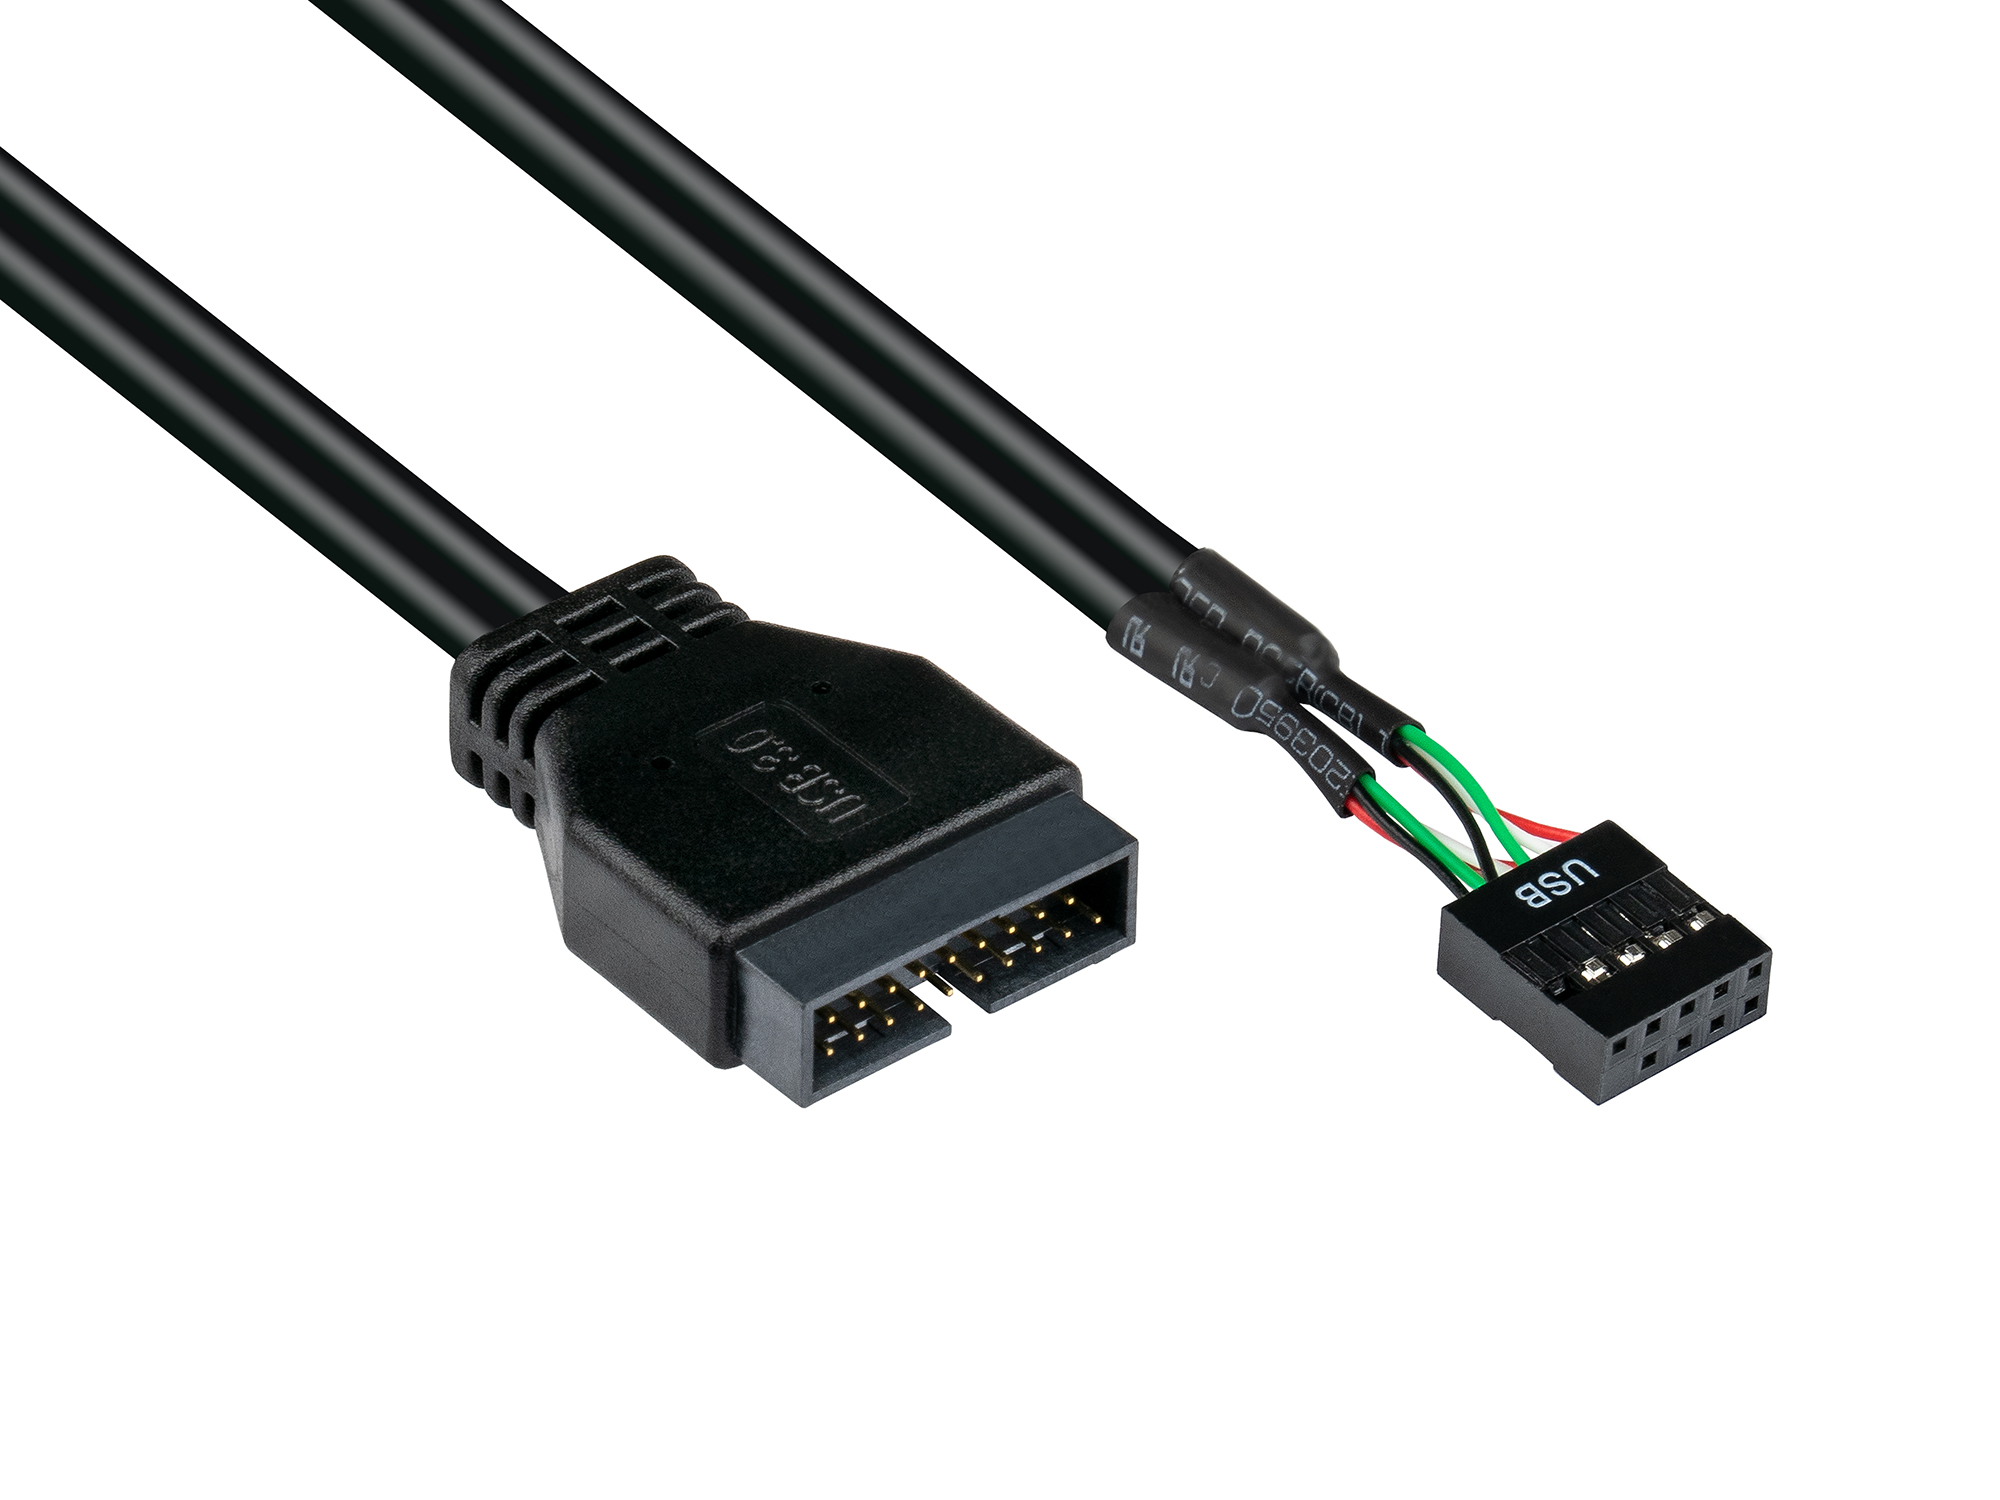 Adapter intern USB 3.0 Pin-Header Stecker an USB 2.0 Pin-Header Buchse, schwarz, 0,6m